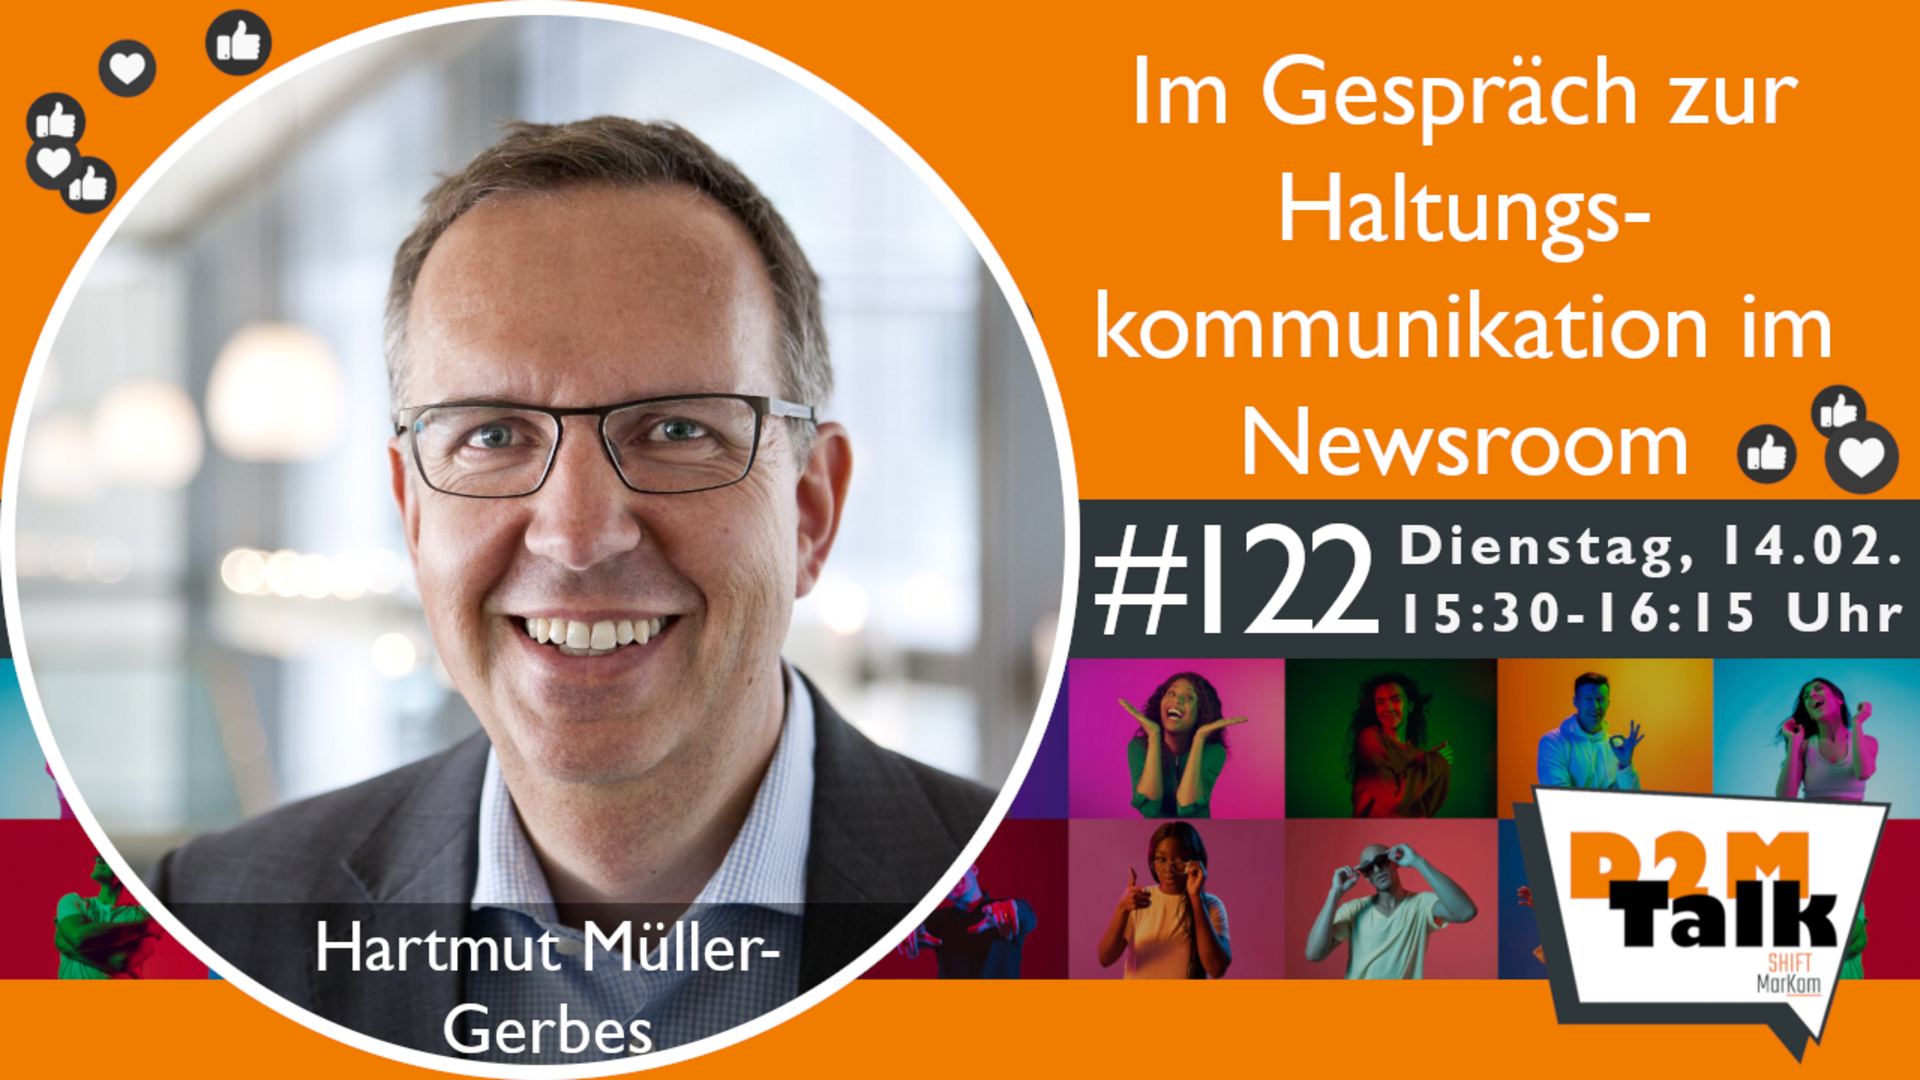 Im Gespräch mit Hartmut Müller-Gerbes zu den Herausforderungen von Haltungskommunikation im Newsroom